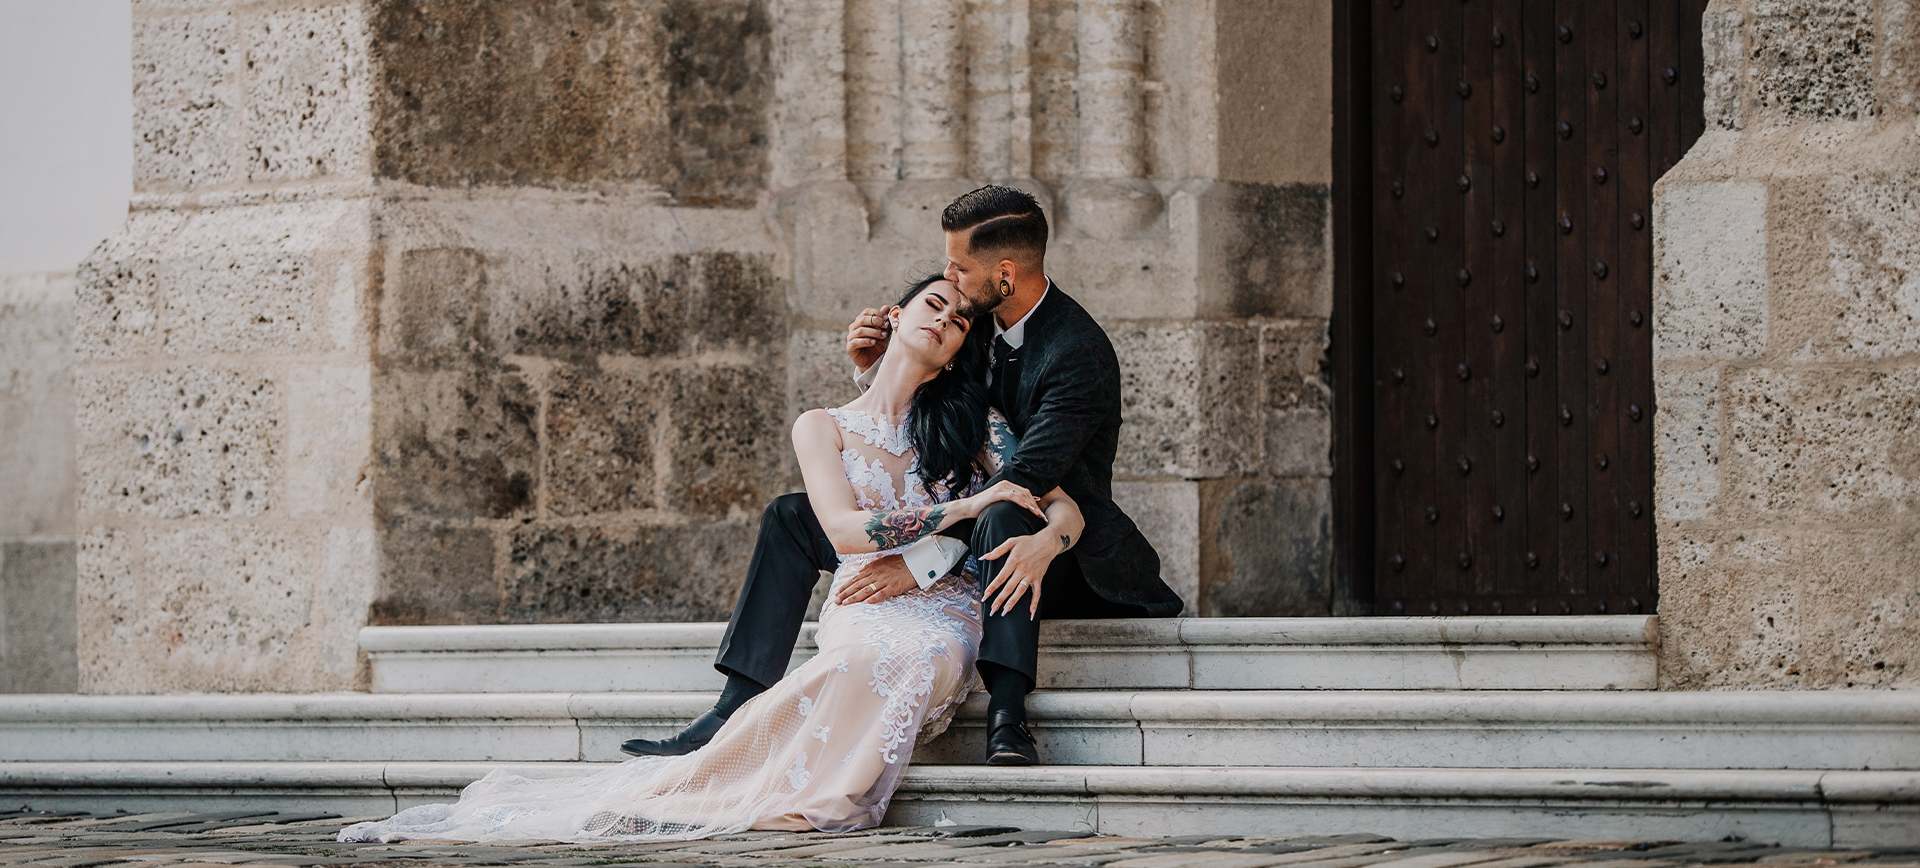 Urban after wedding photoshoot in Croatia